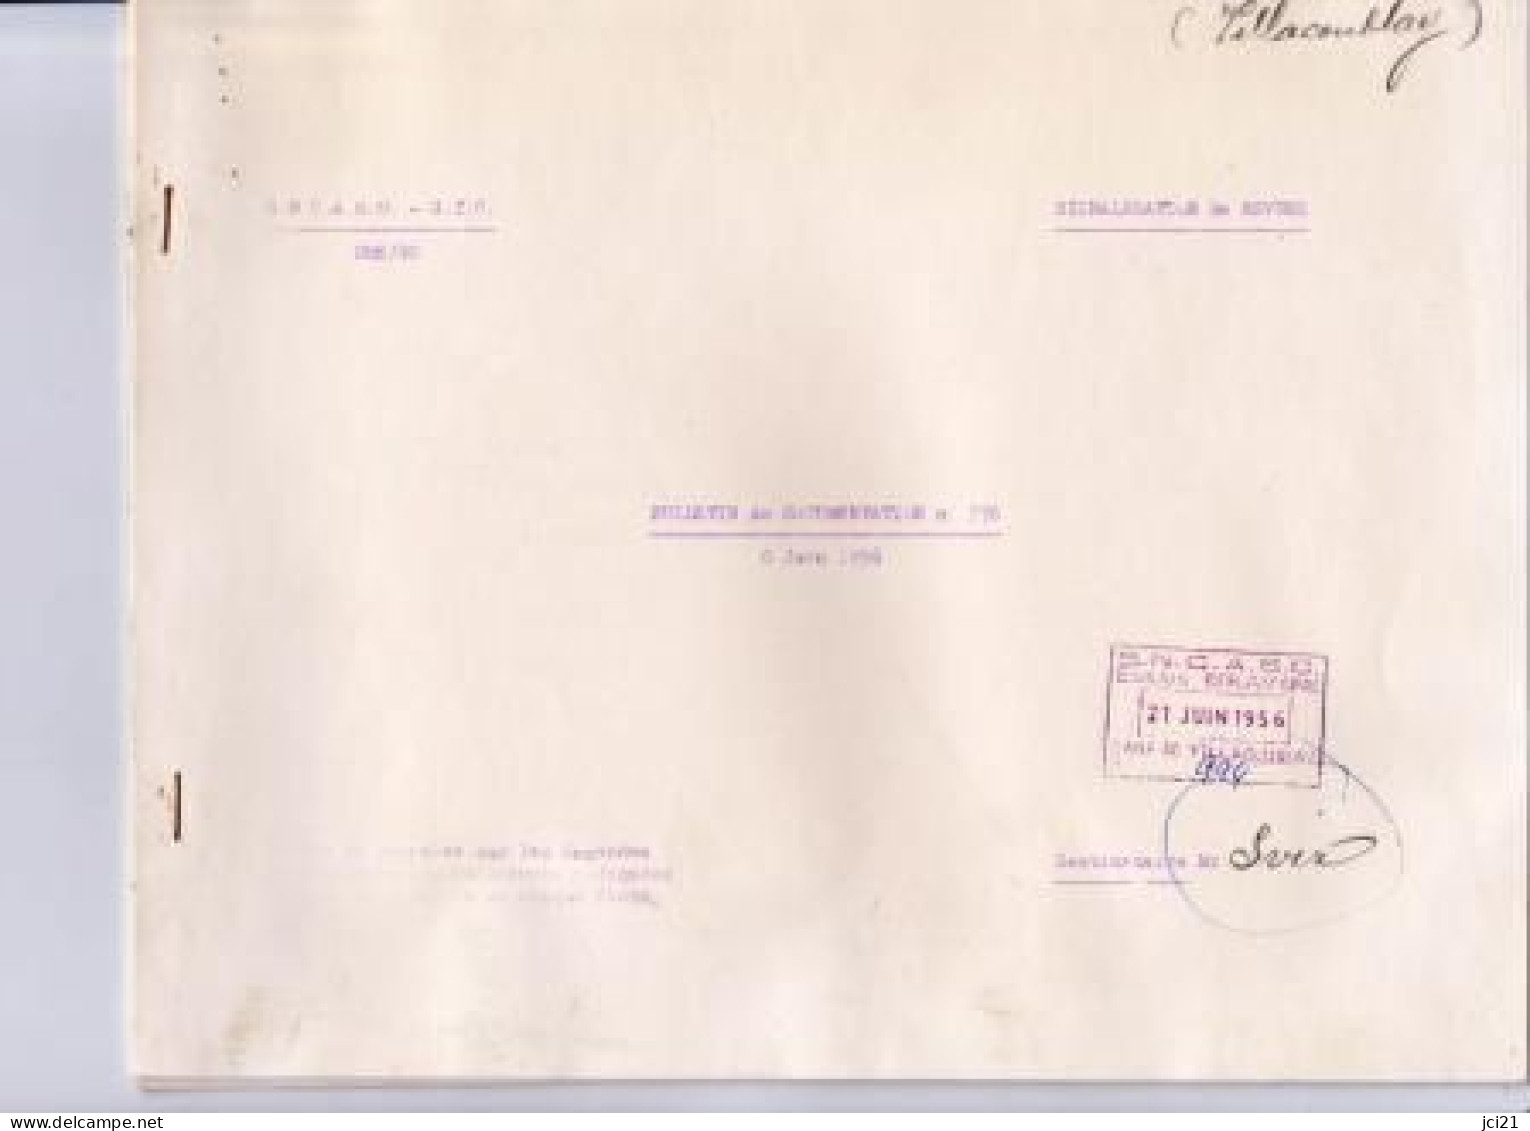 Bulletin De Documentation De La S.N.C.A.S.O. - G.T.C. N° 376 Du 8 Juin 1956 _M247 - Fliegerei